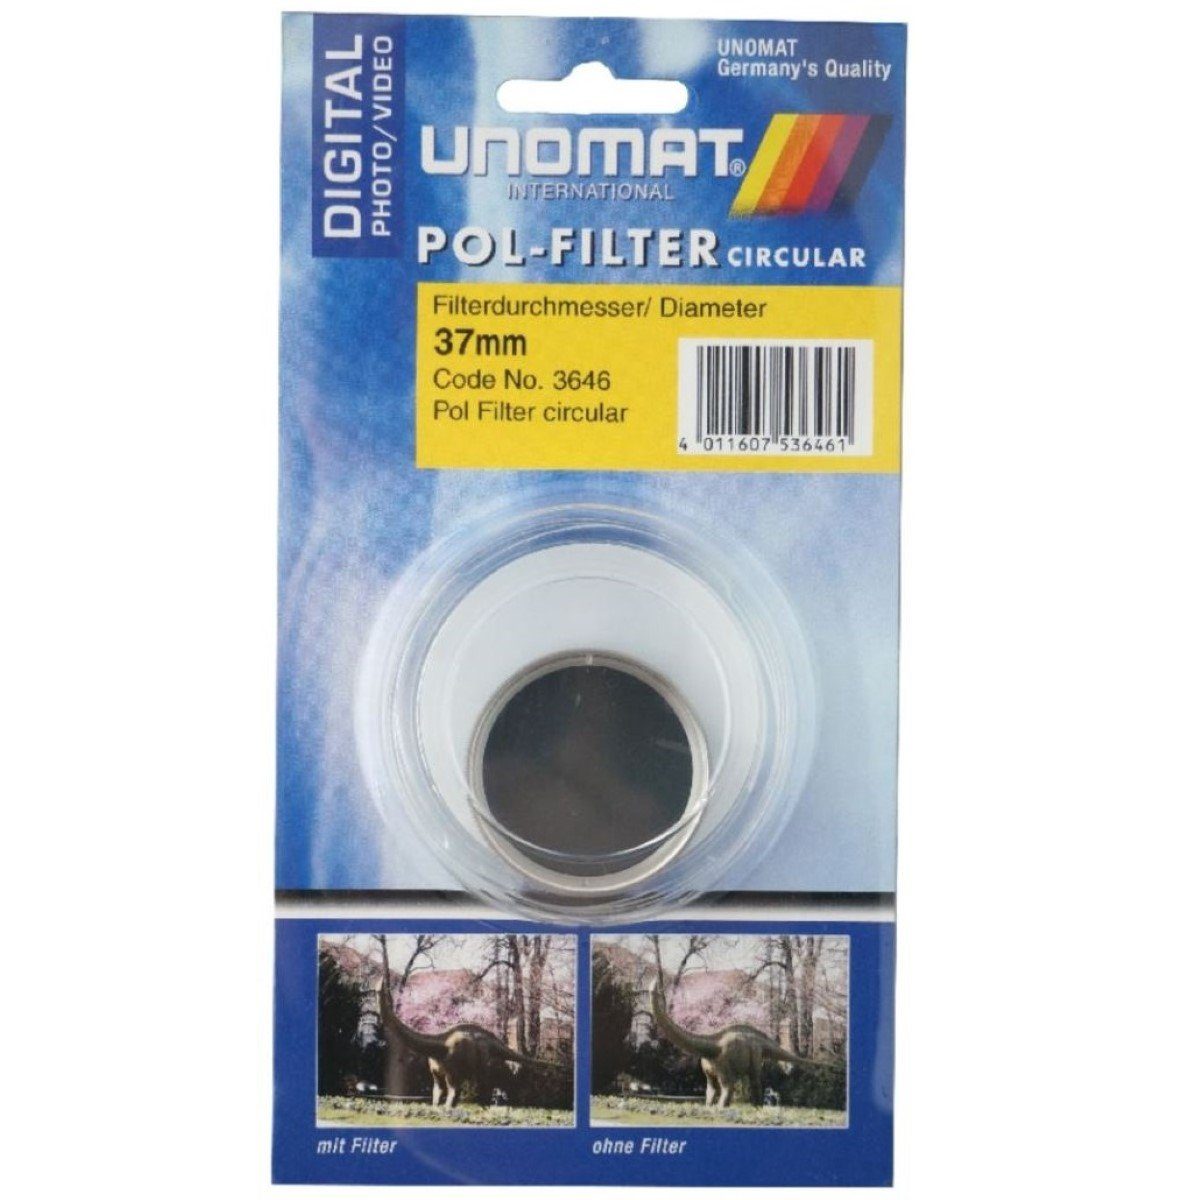 Pol-Filter kräftige für Polarisations-Filter Farben Digital, circular Vergütung, HTMC für (Pol-Filter 37mm Kamera Objektivzubehör etc)